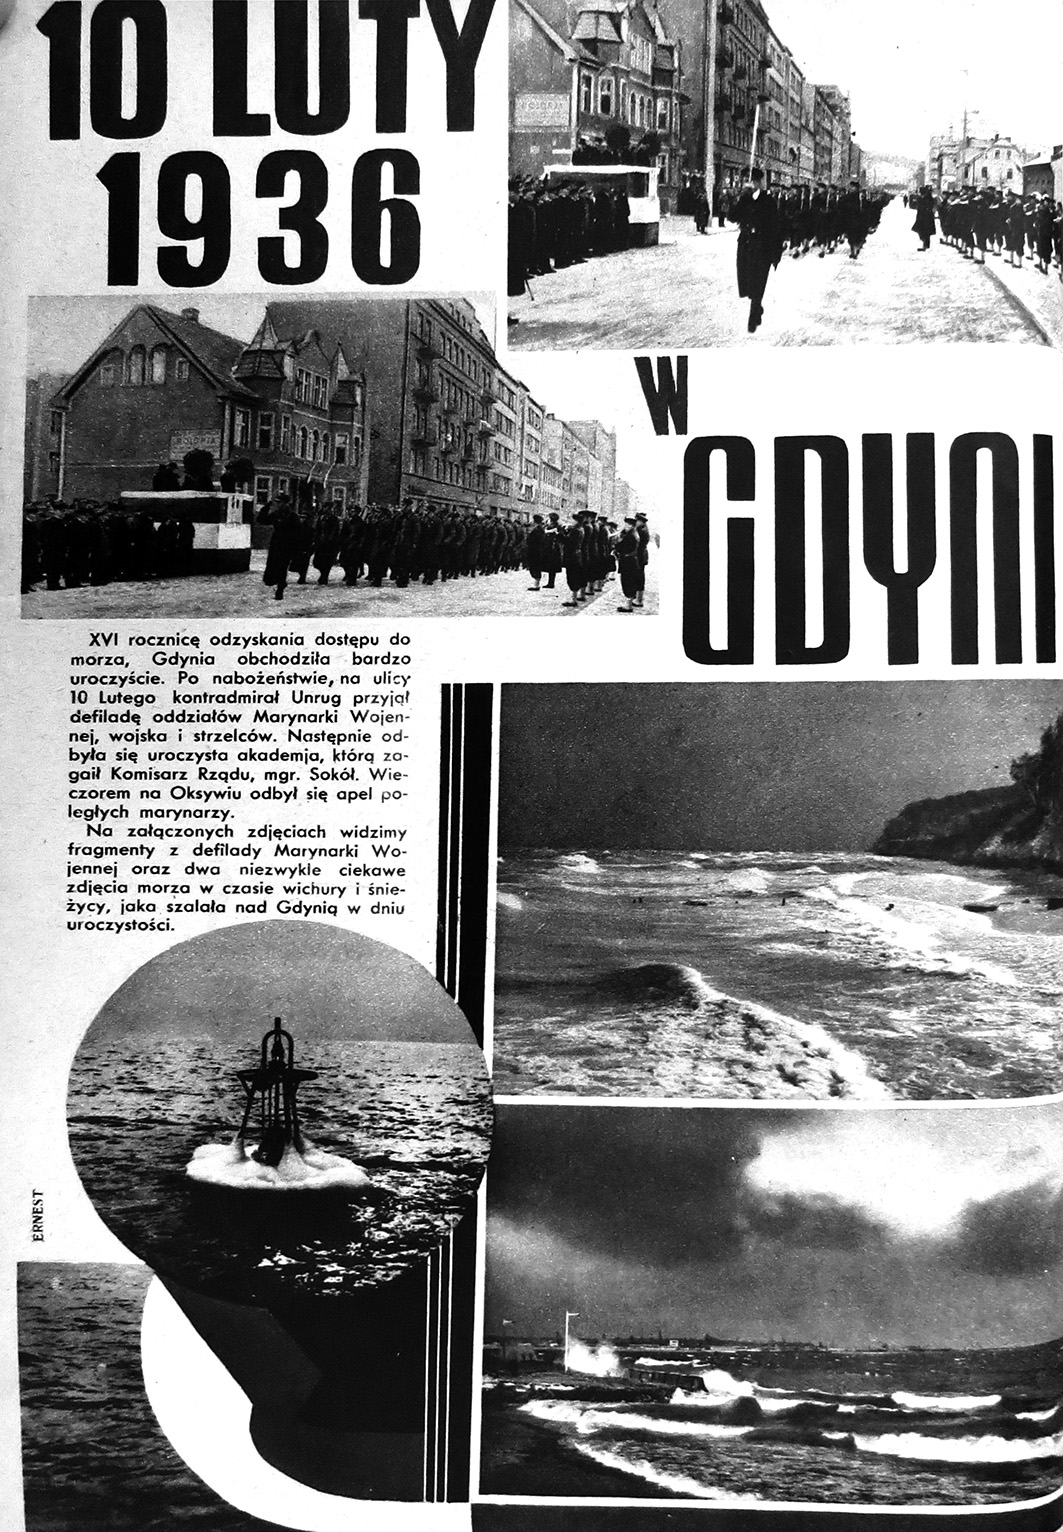 10 luty 1936 w Gdyni